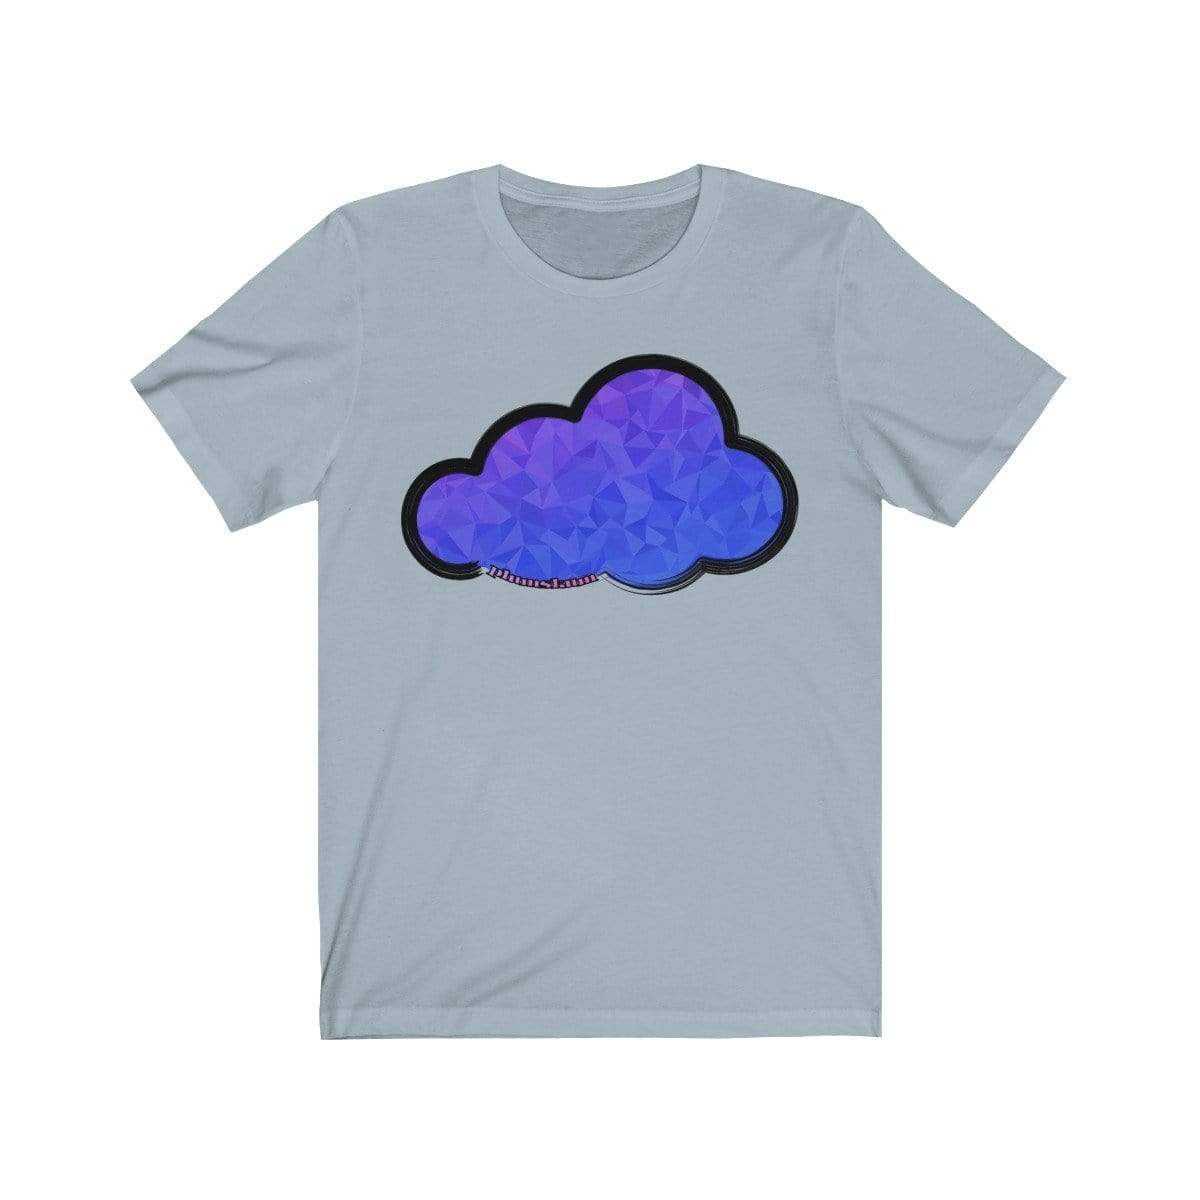 Printify T-Shirt Light Blue / M Plumskum Art Clouds Tee